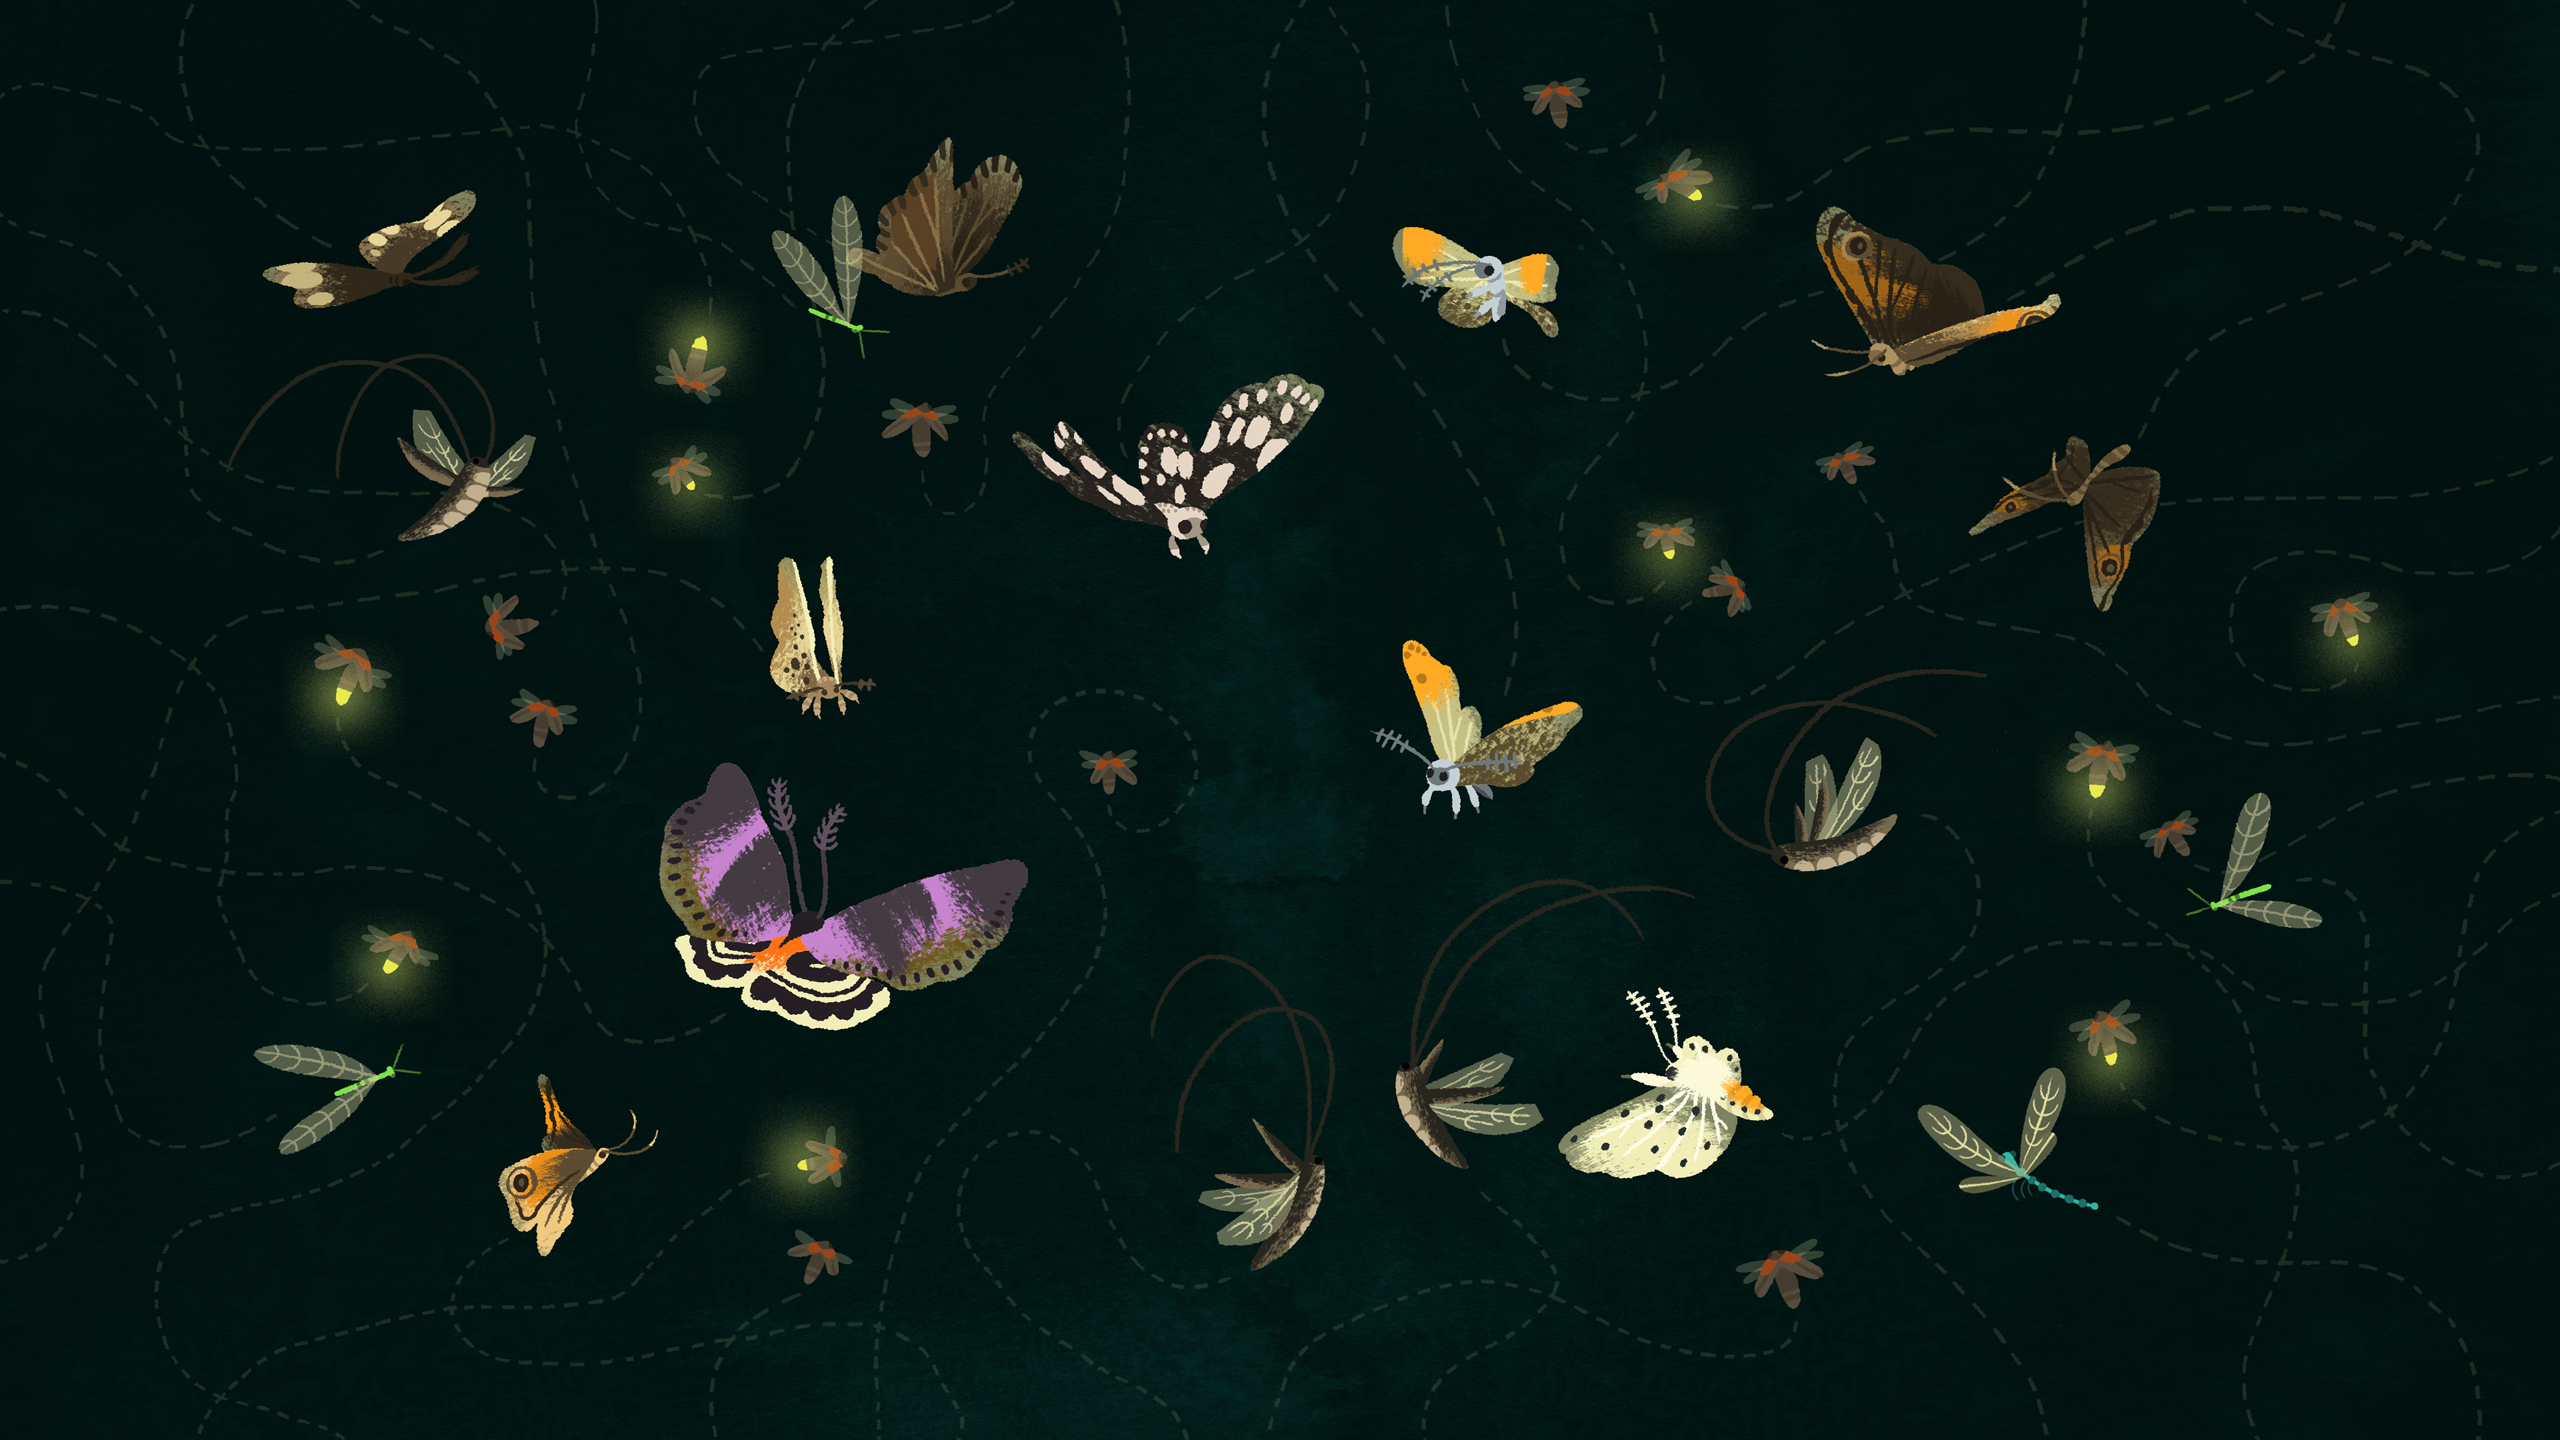 Butterflies Moths and Fireflies   Moths Wallpaper 40010378 2560x1440